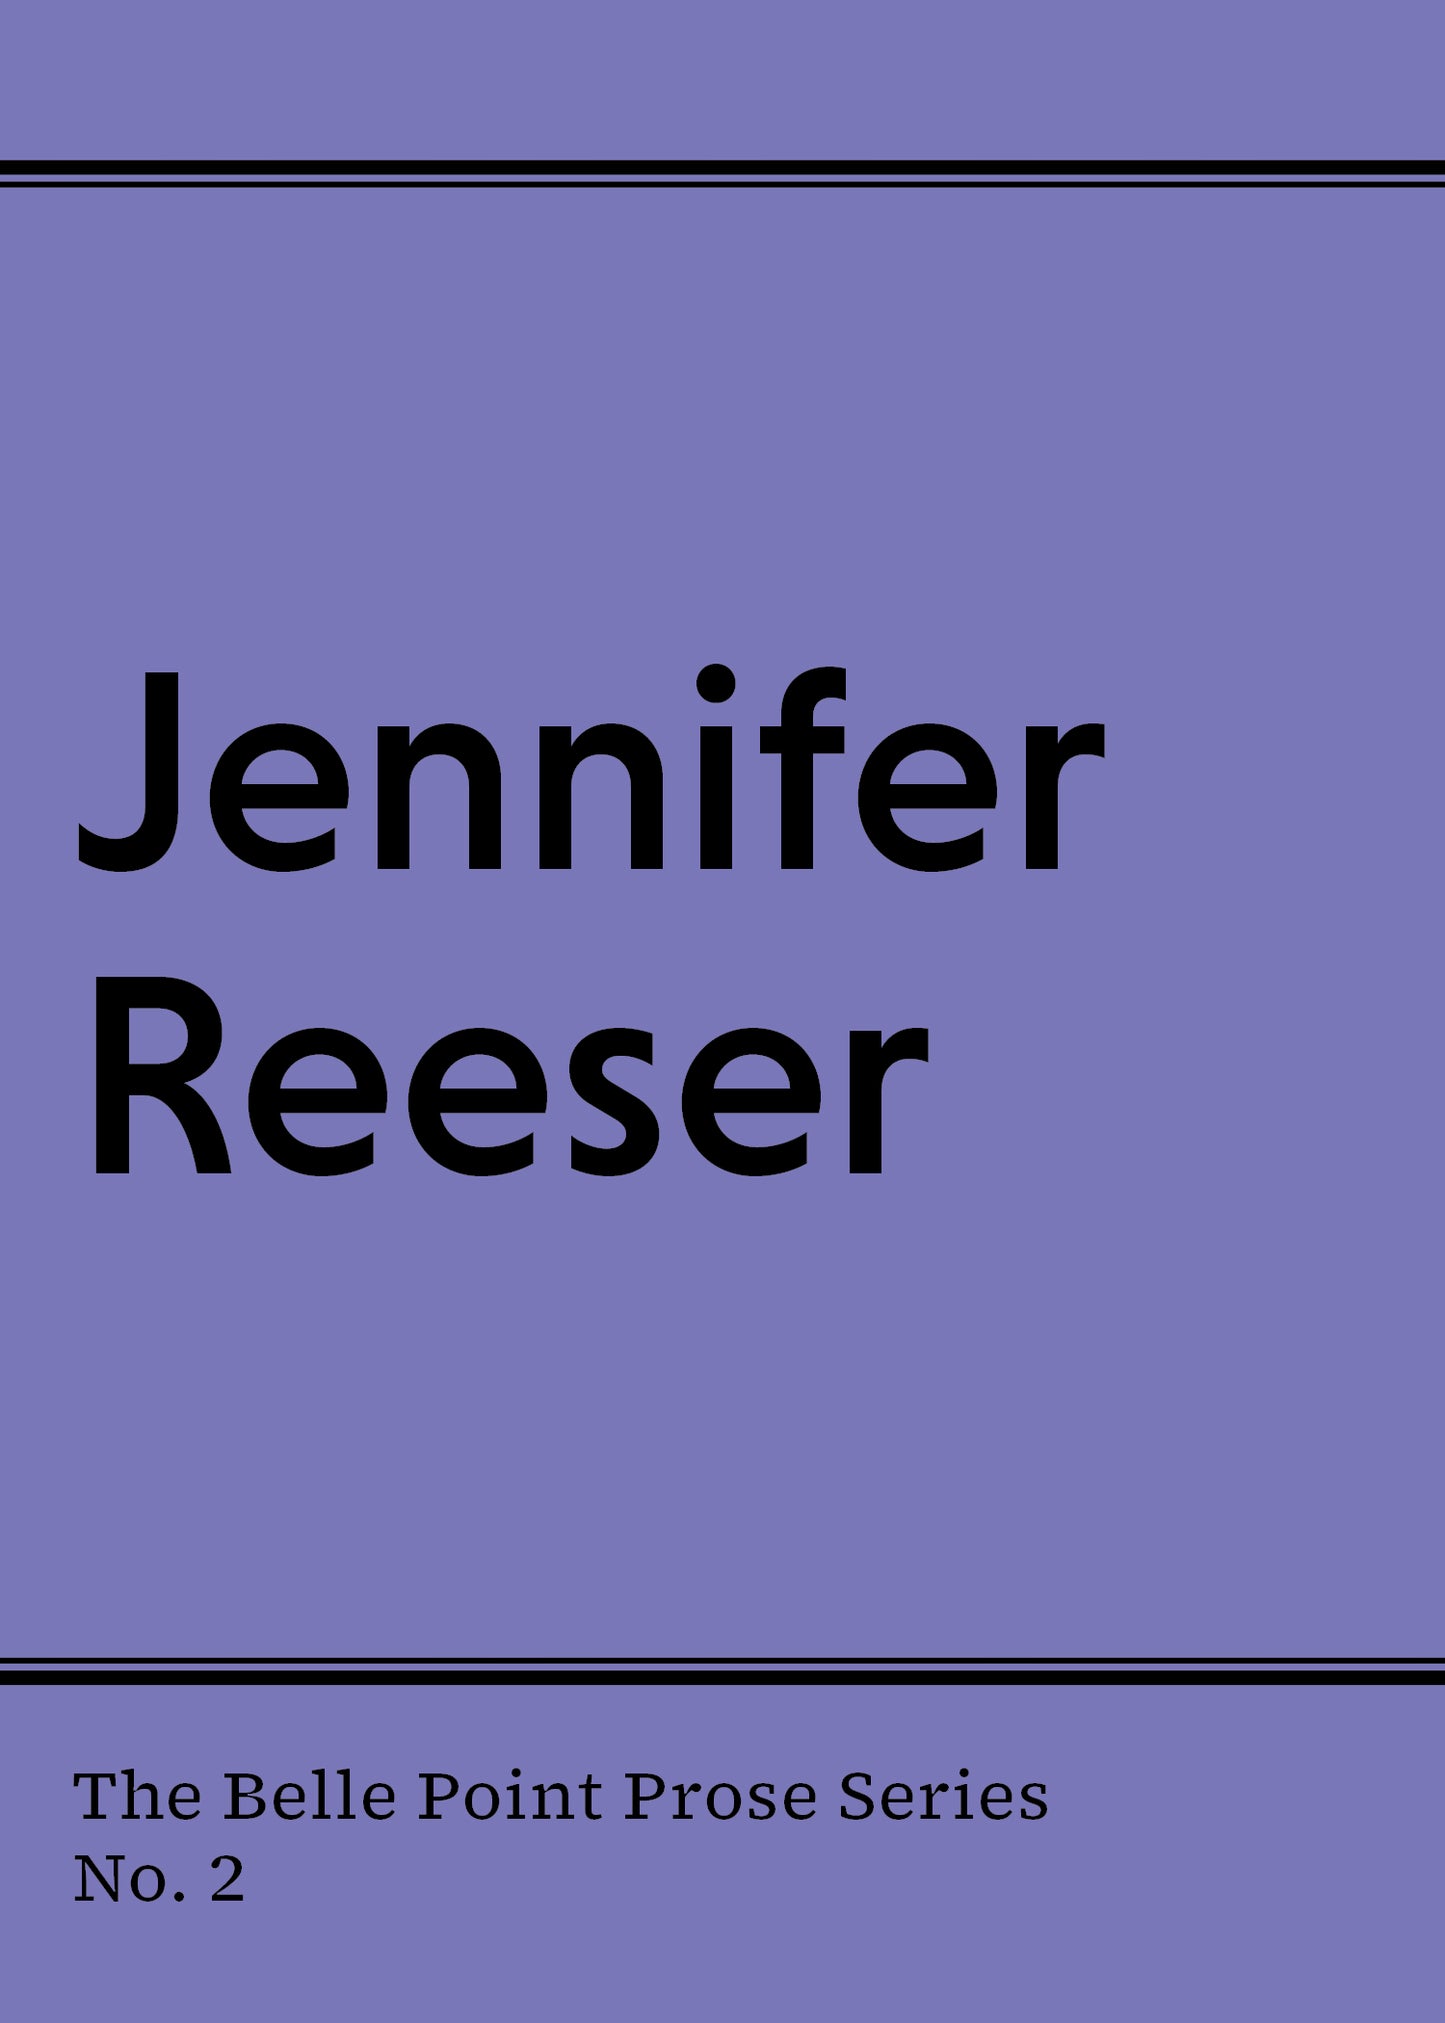 Prose #2: Jennifer Reeser